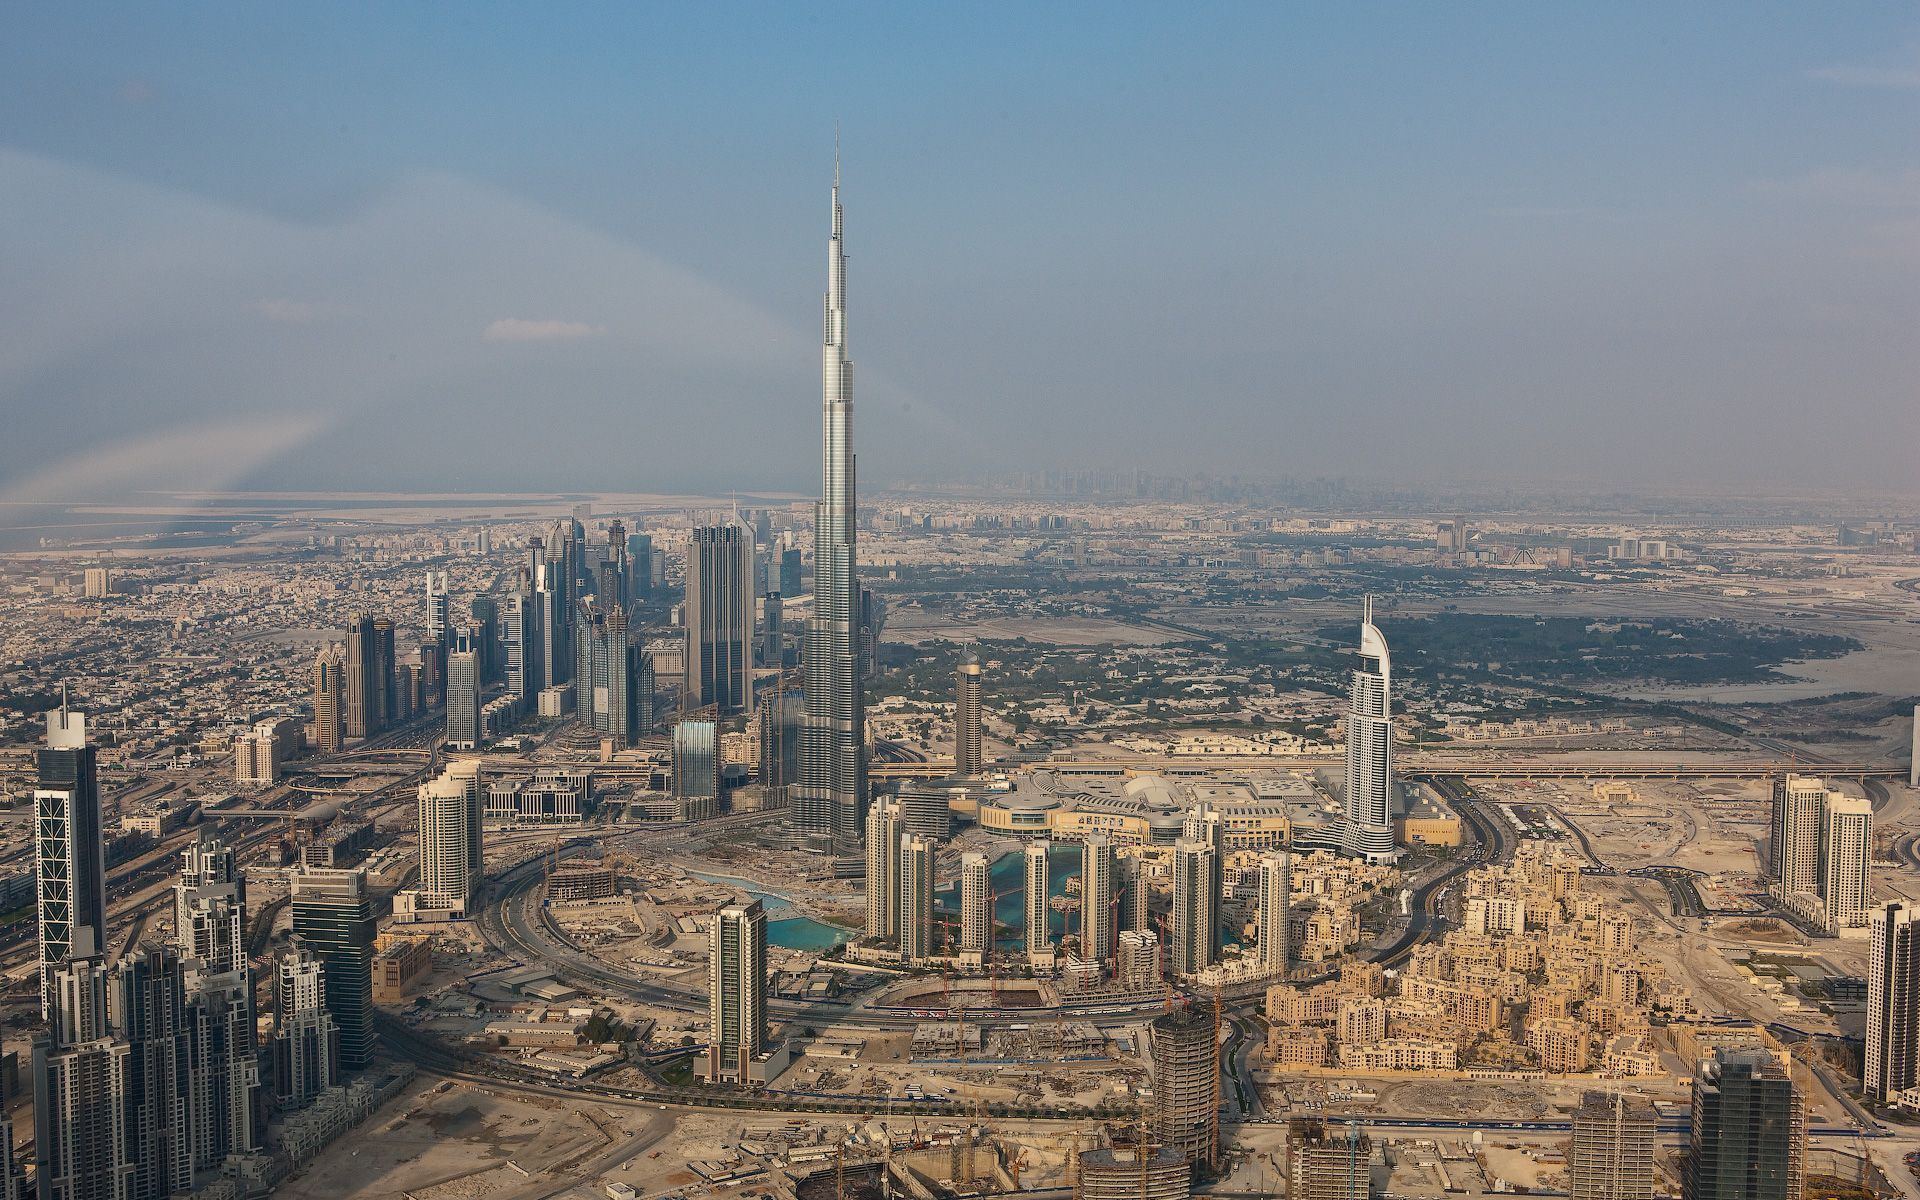 Adon Apamea: Dubai and the Fantasies of Civilization